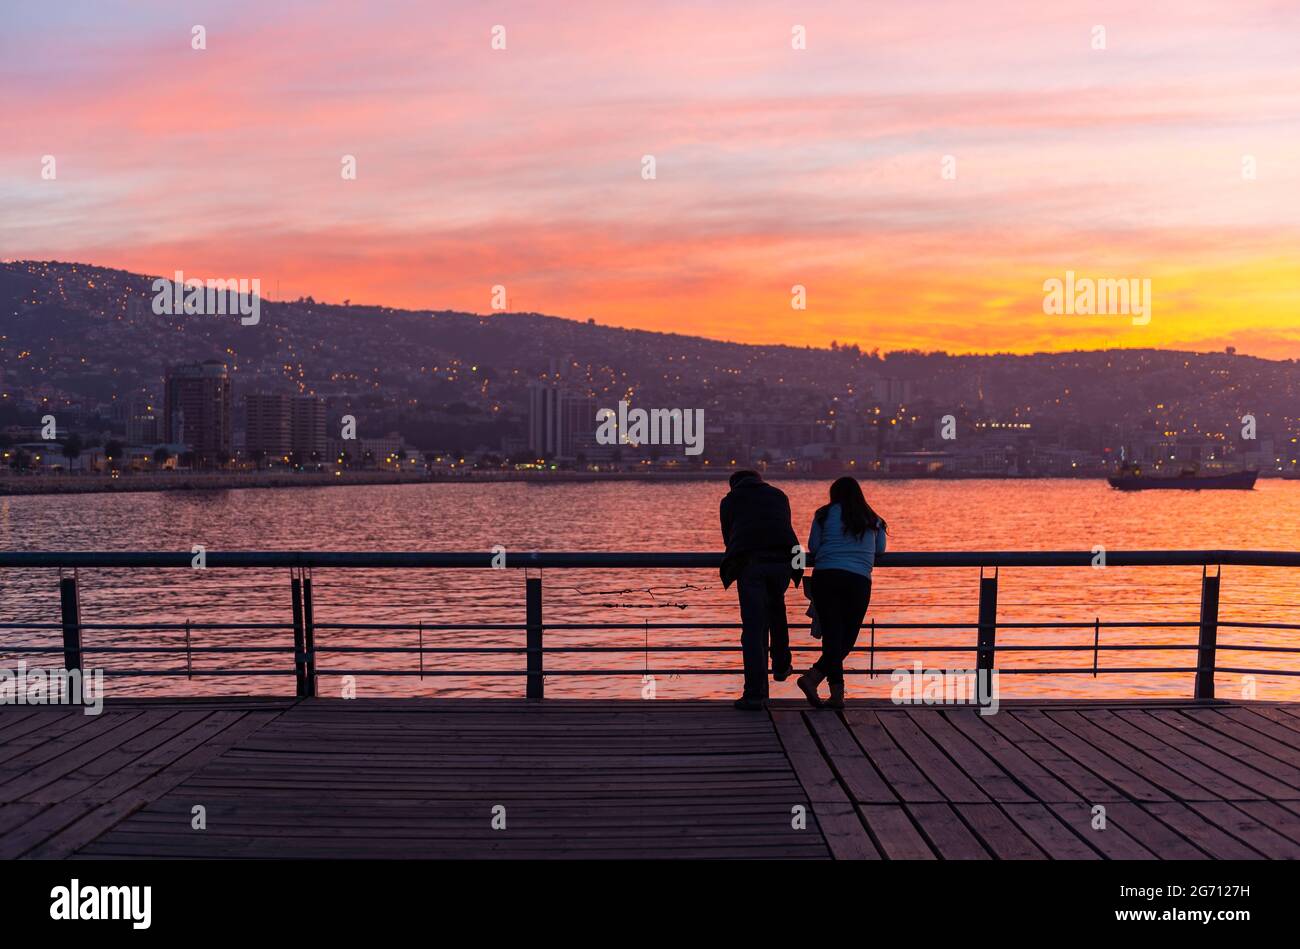 Lo skyline di Valpraraiso e la baia sull'Oceano Pacifico con una romantica coppia in primo piano godendo la vista al tramonto, Cile. Foto Stock